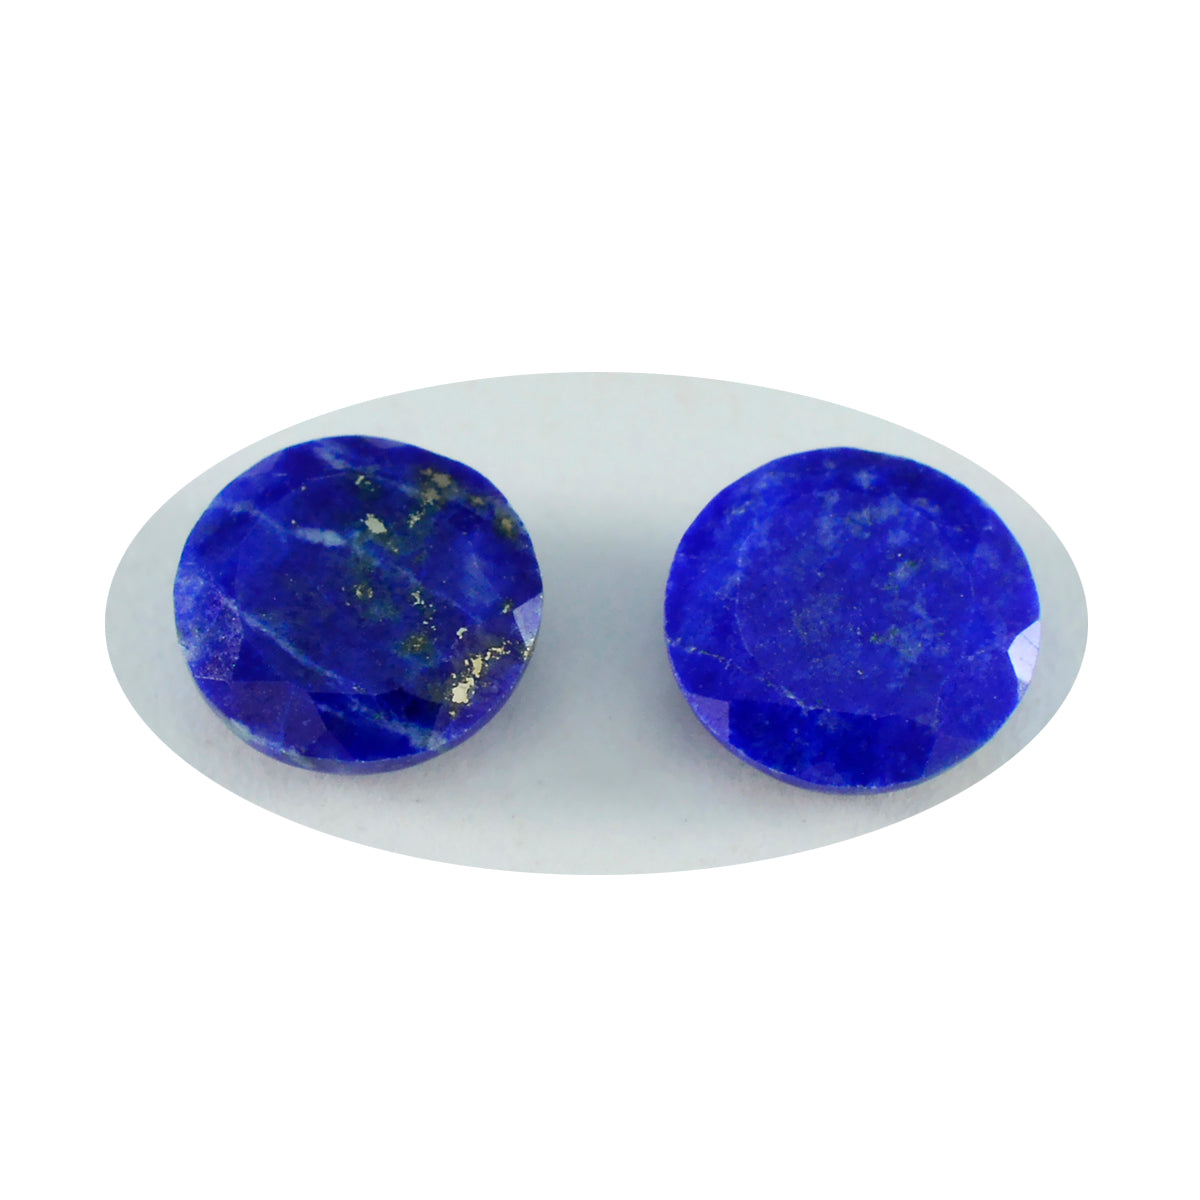 riyogems 1 шт. натуральный синий лазурит ограненный 14x14 мм круглая форма красивый качественный драгоценный камень